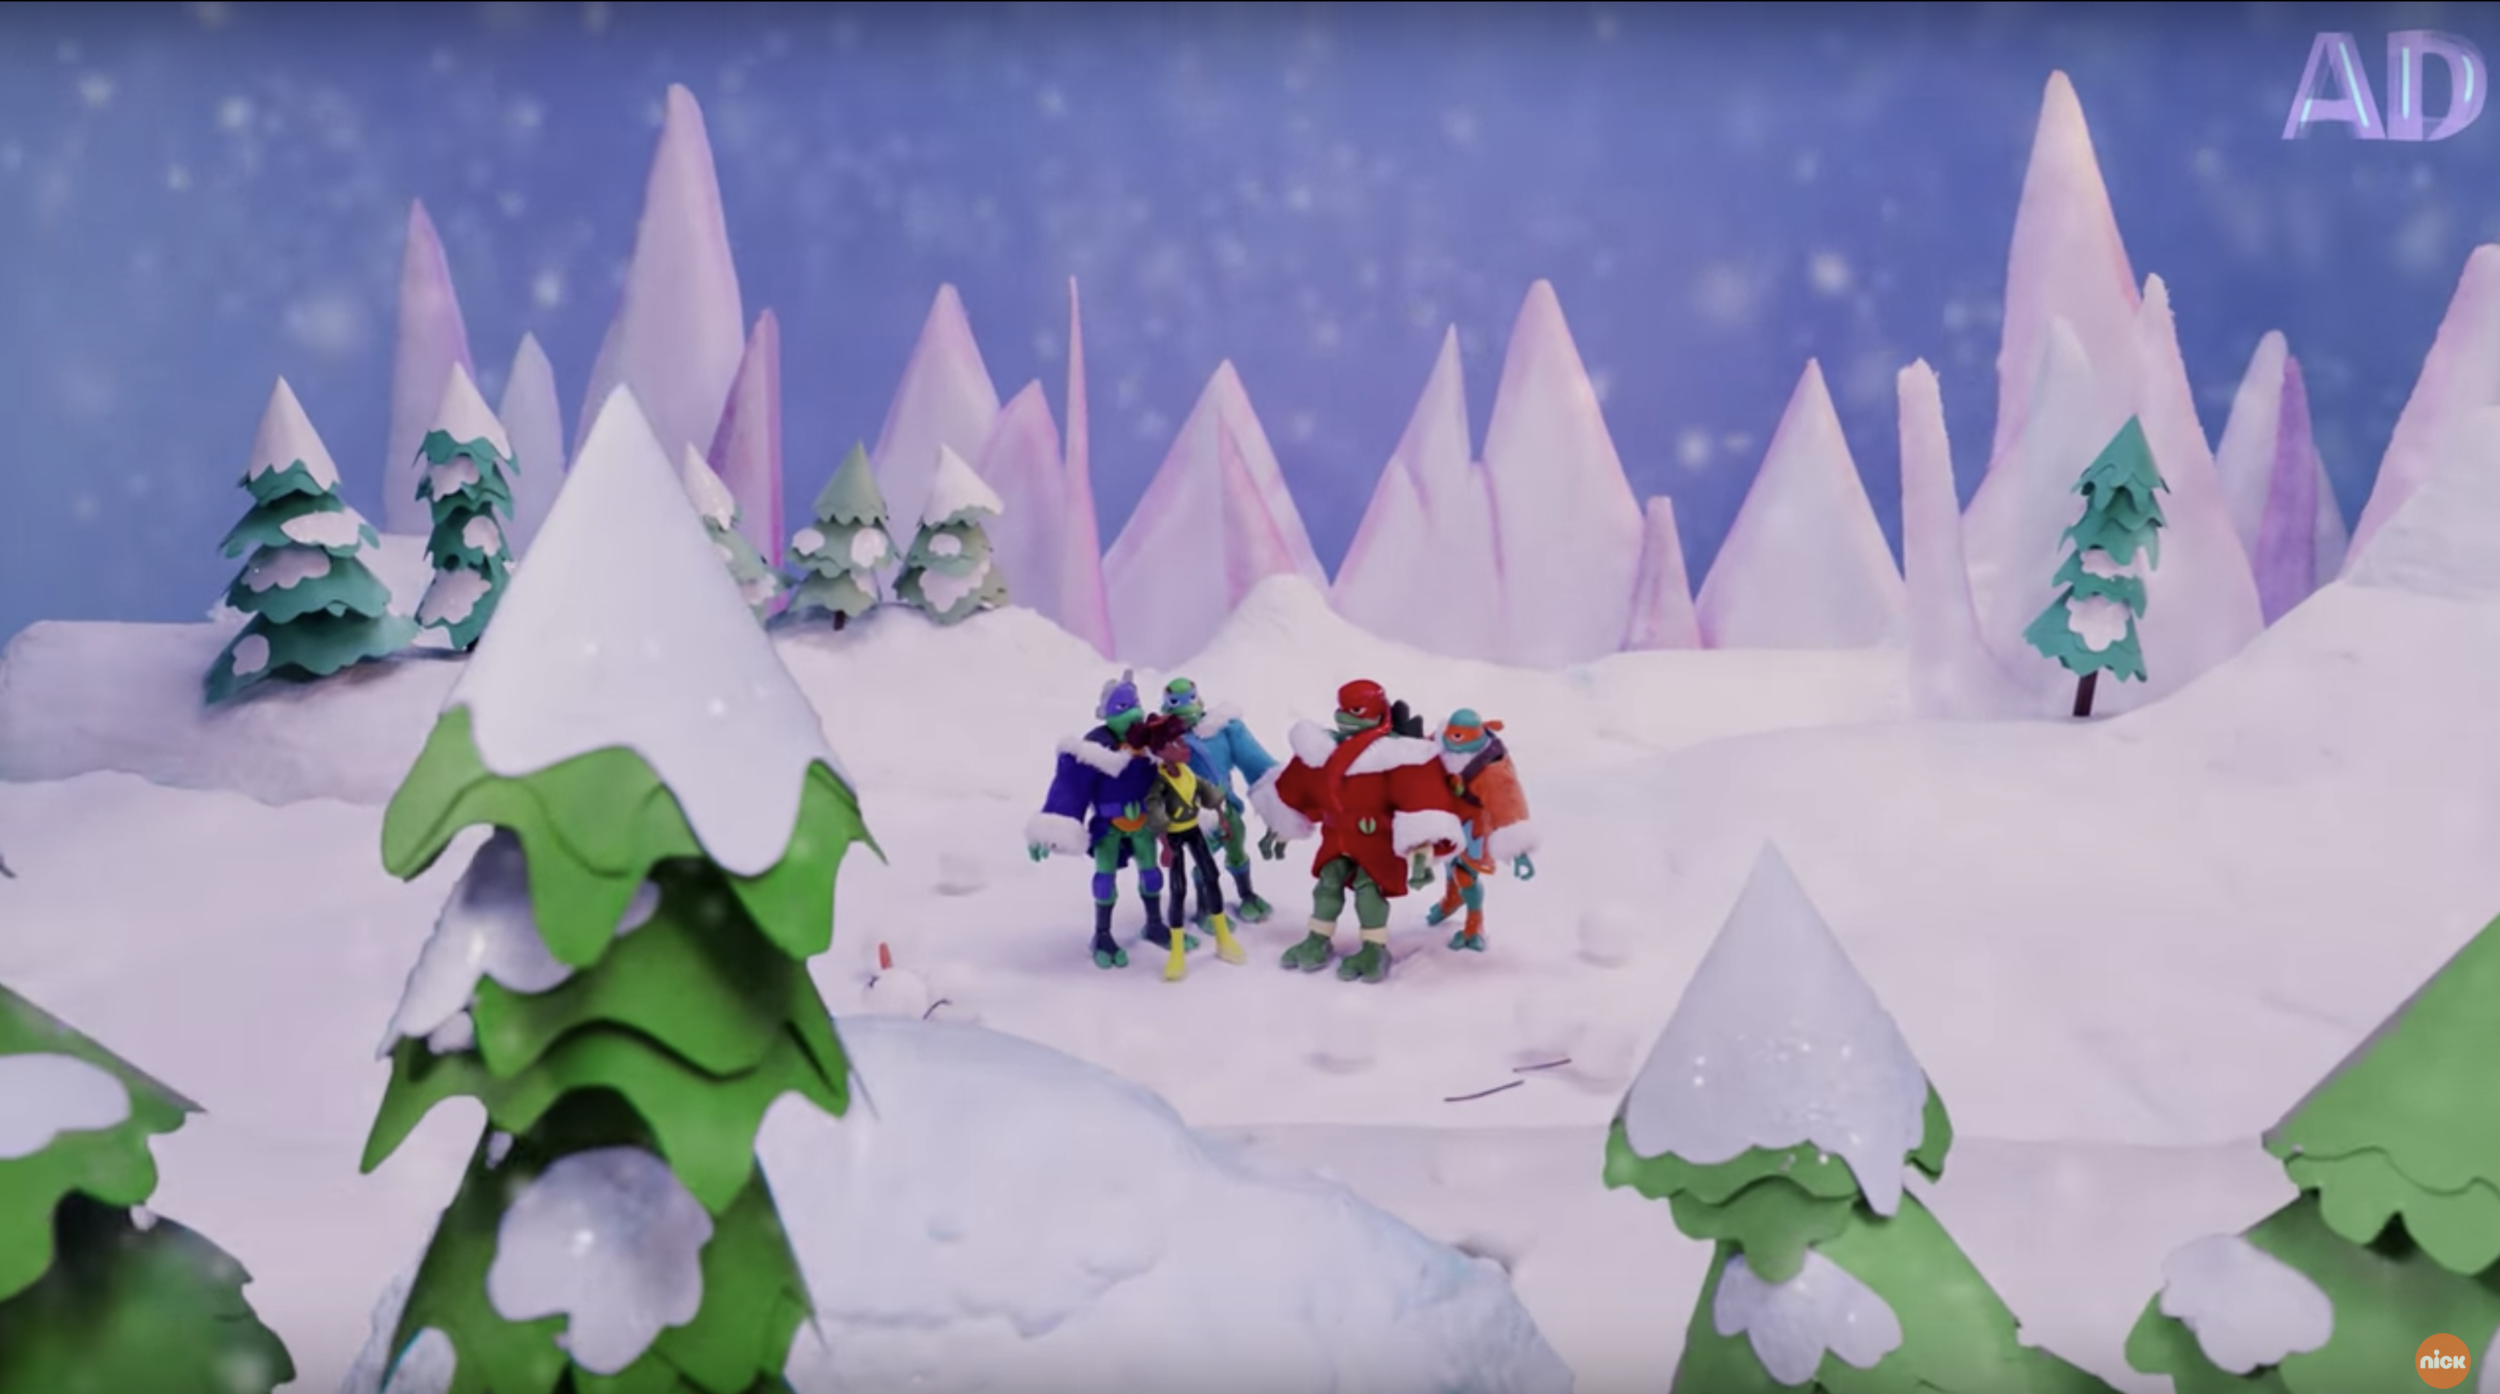 TMNT Action Figures FIGHT Snowmen! 